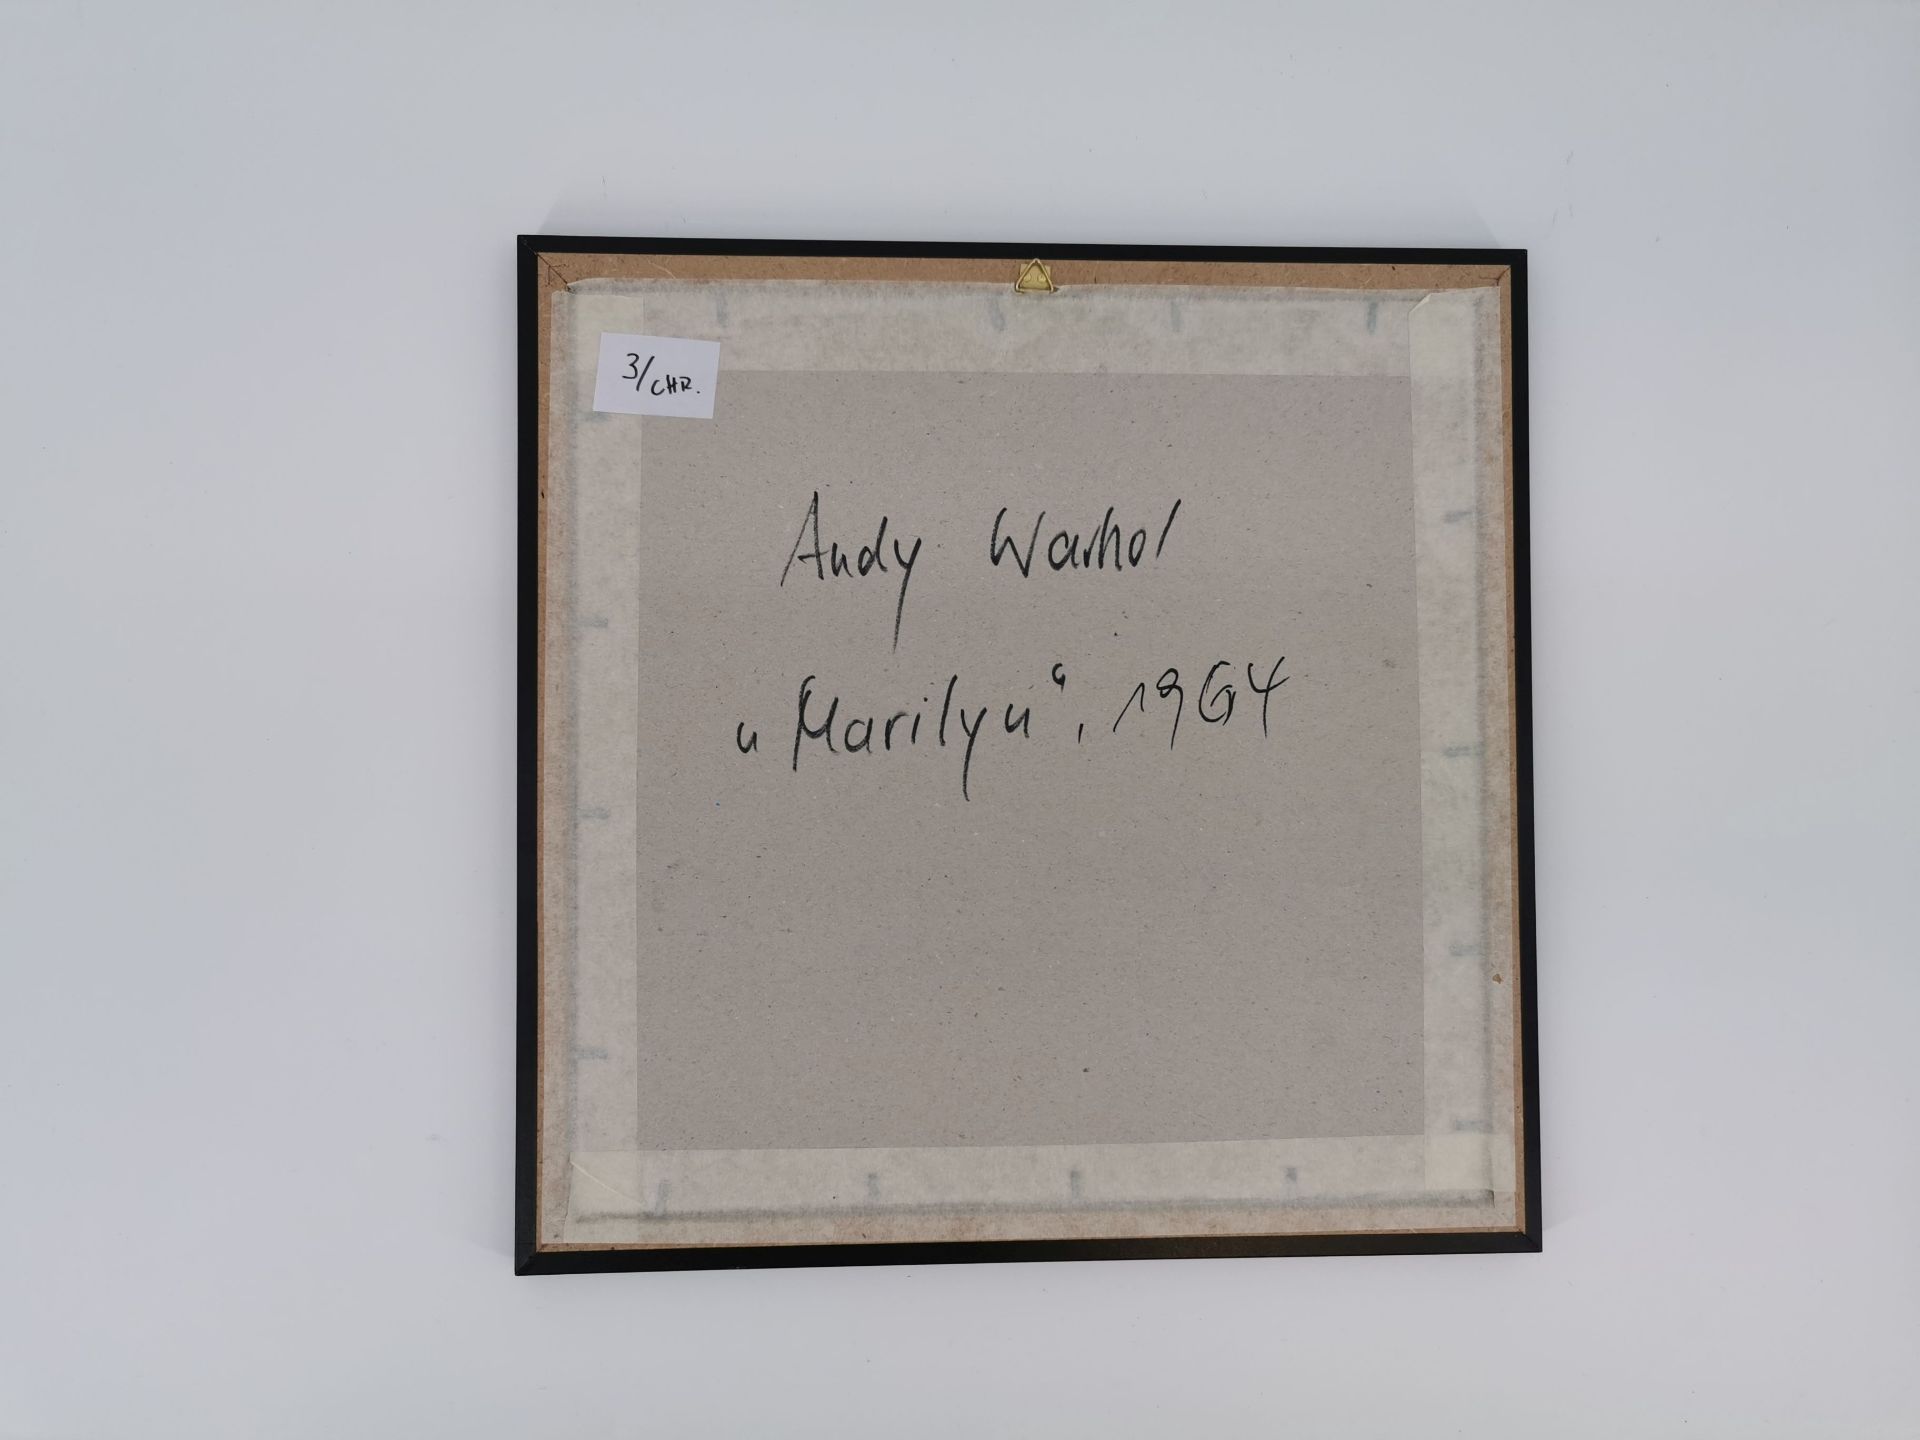 ANDY WARHOL GRAPHICS - Image 2 of 2